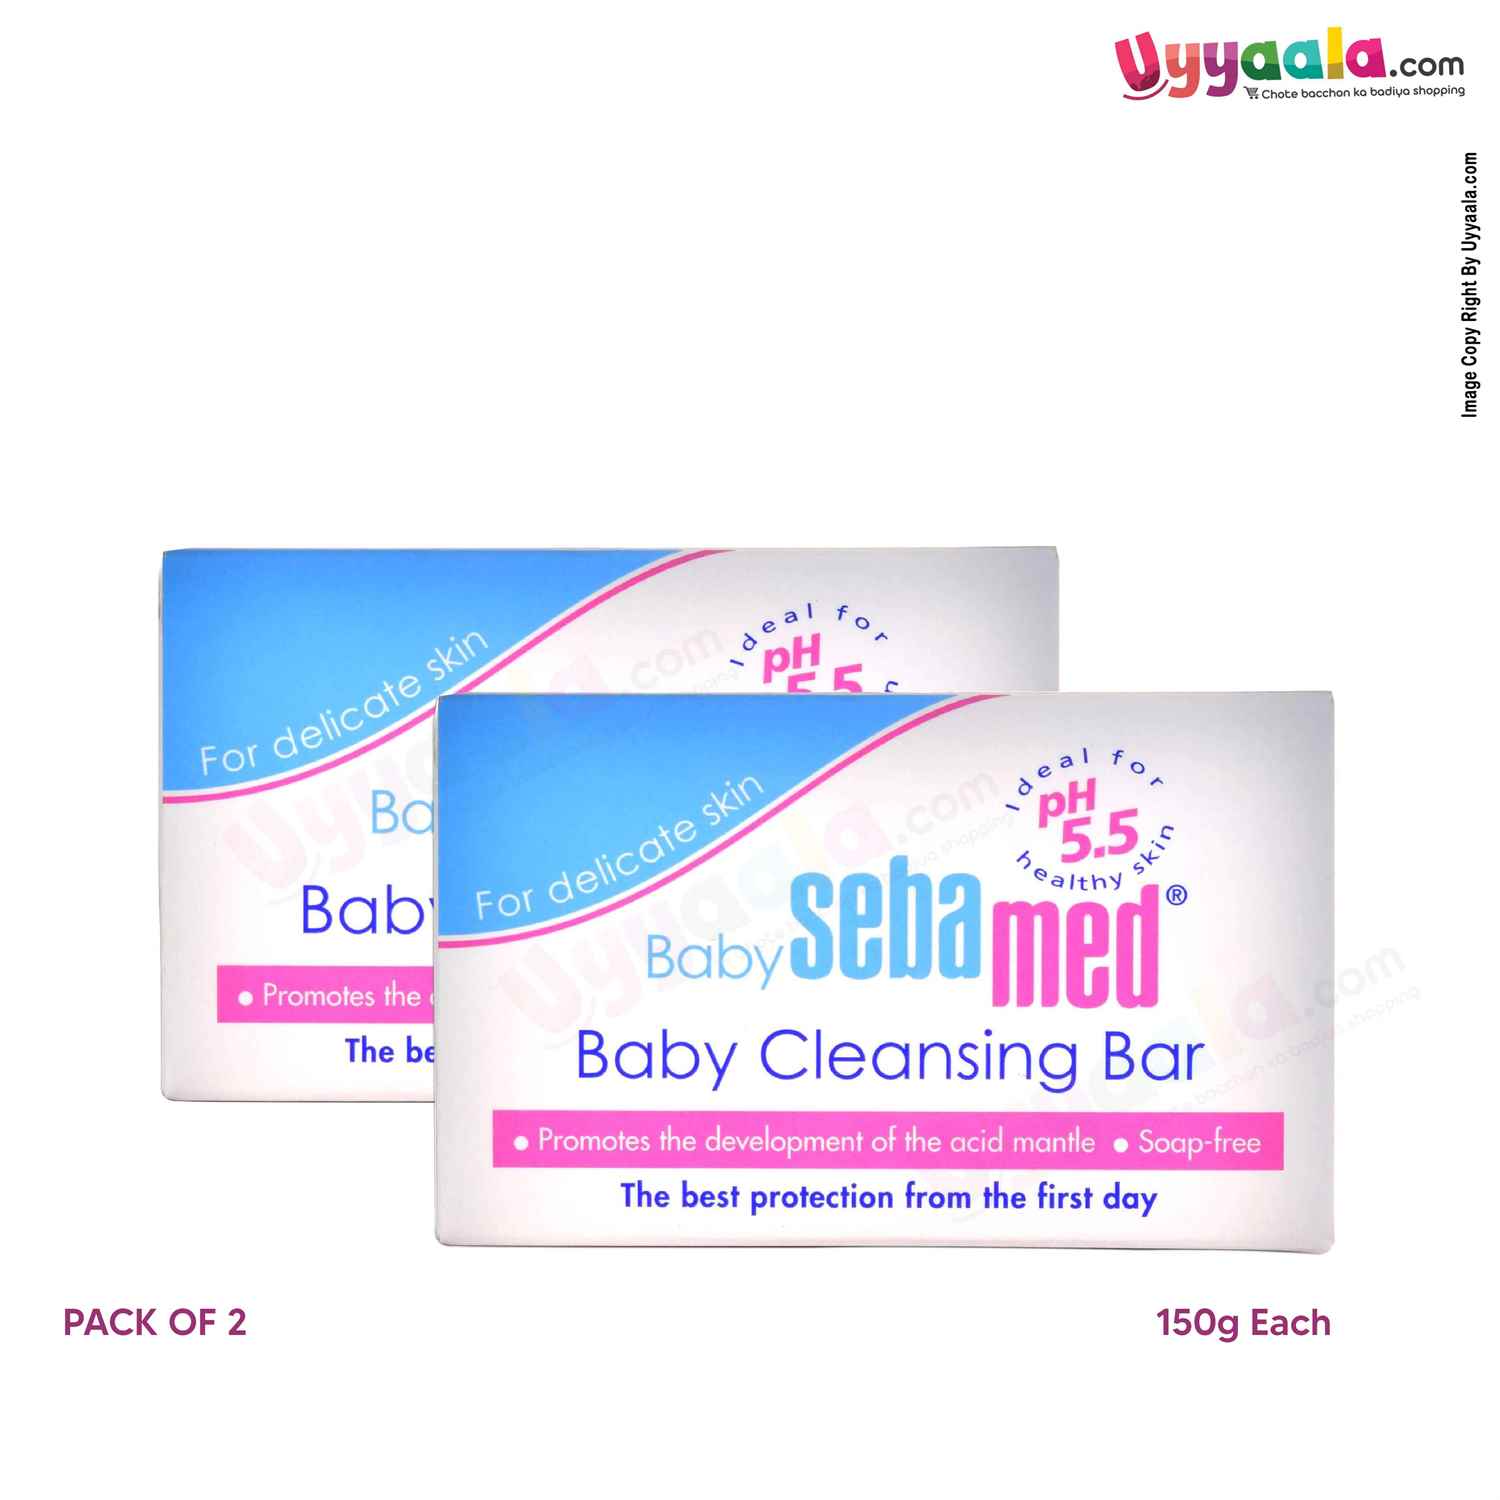 Sebamed Baby Cleansing Bar - 150 gm (pack of 2)